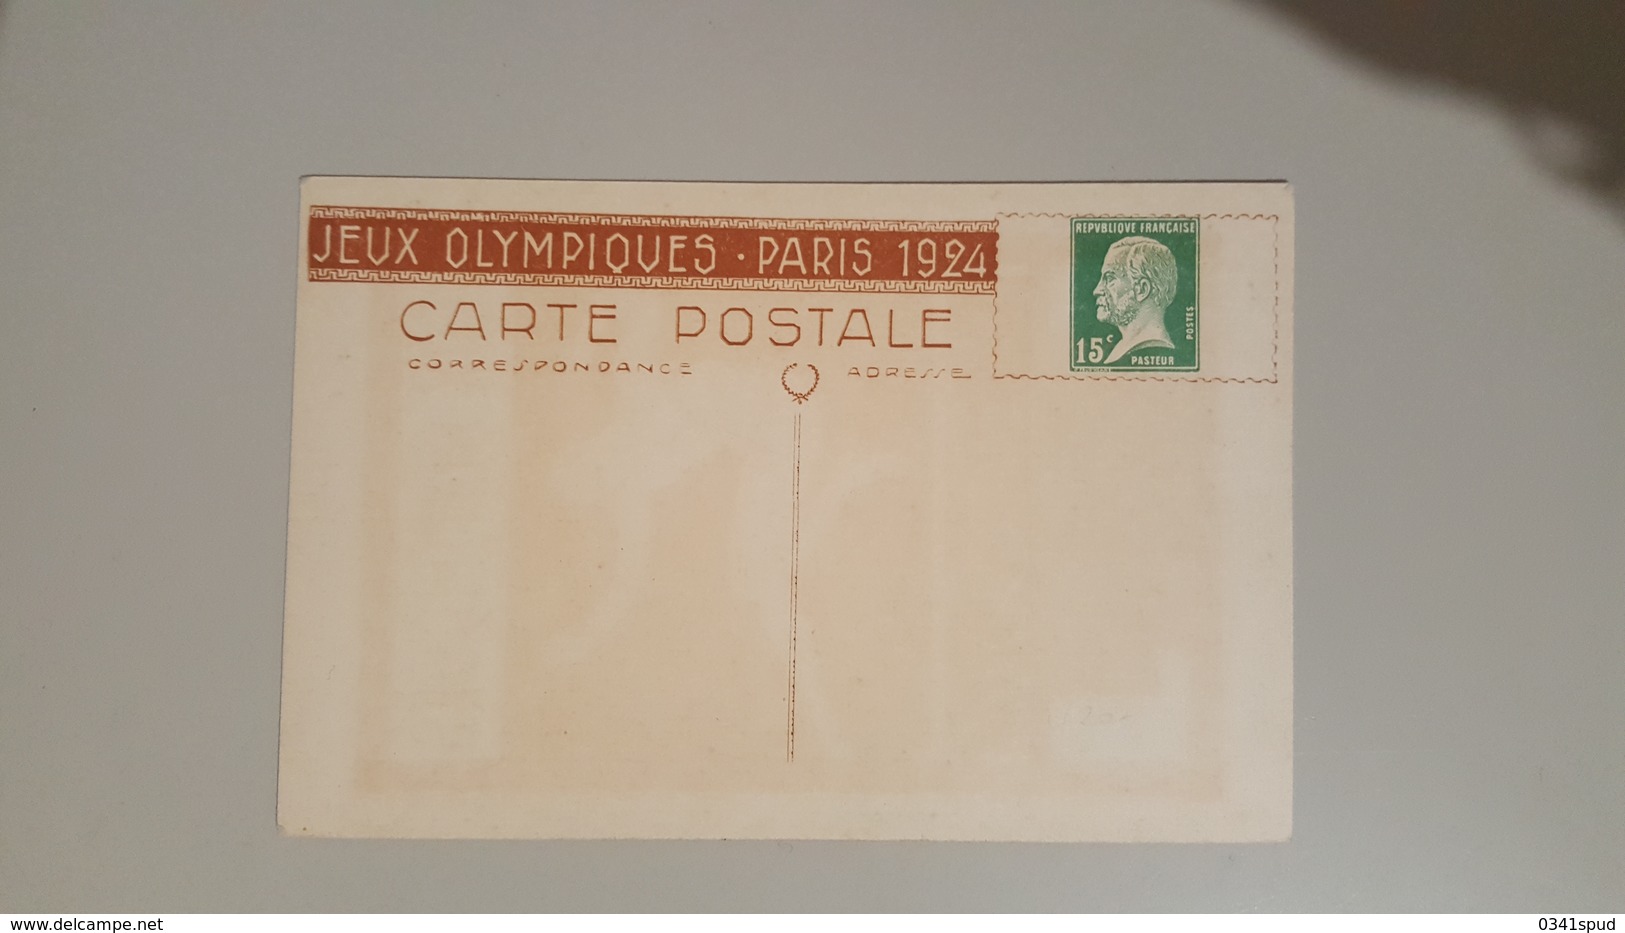 Jeux Olympiques 1924 Carte Postale Pasteur Saut  Salto TB Very Fine - Sommer 1924: Paris